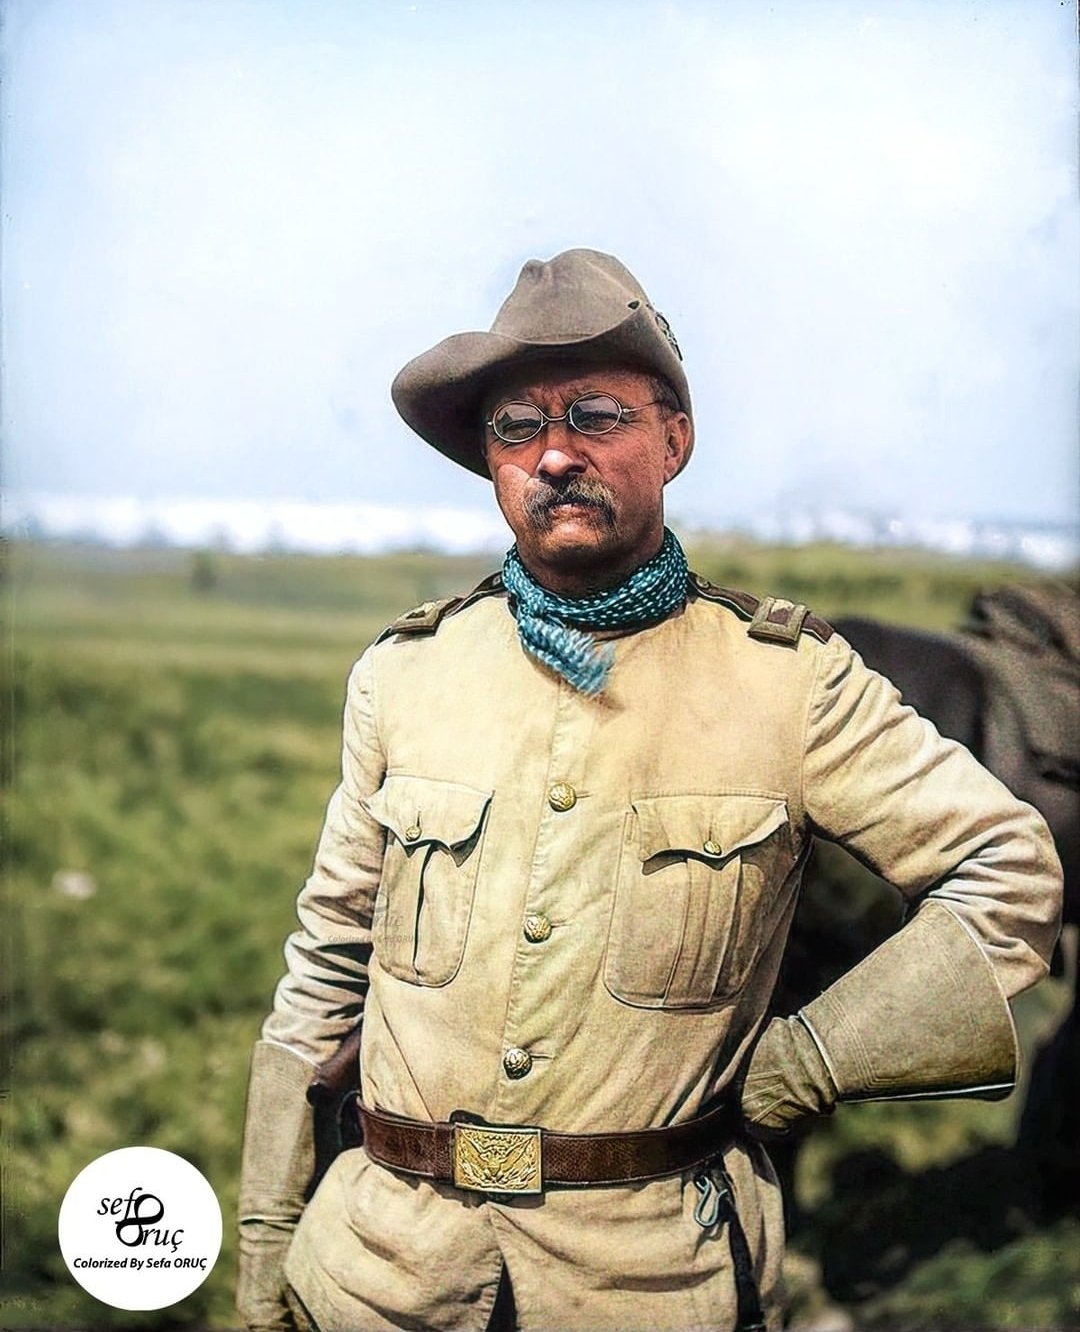 Theodore Roosevelt fotografado em 1898, durante a Guerra Hispano-Americana, enquanto era coronel da 1ª Cavalaria Voluntária dos Estados Unidos.